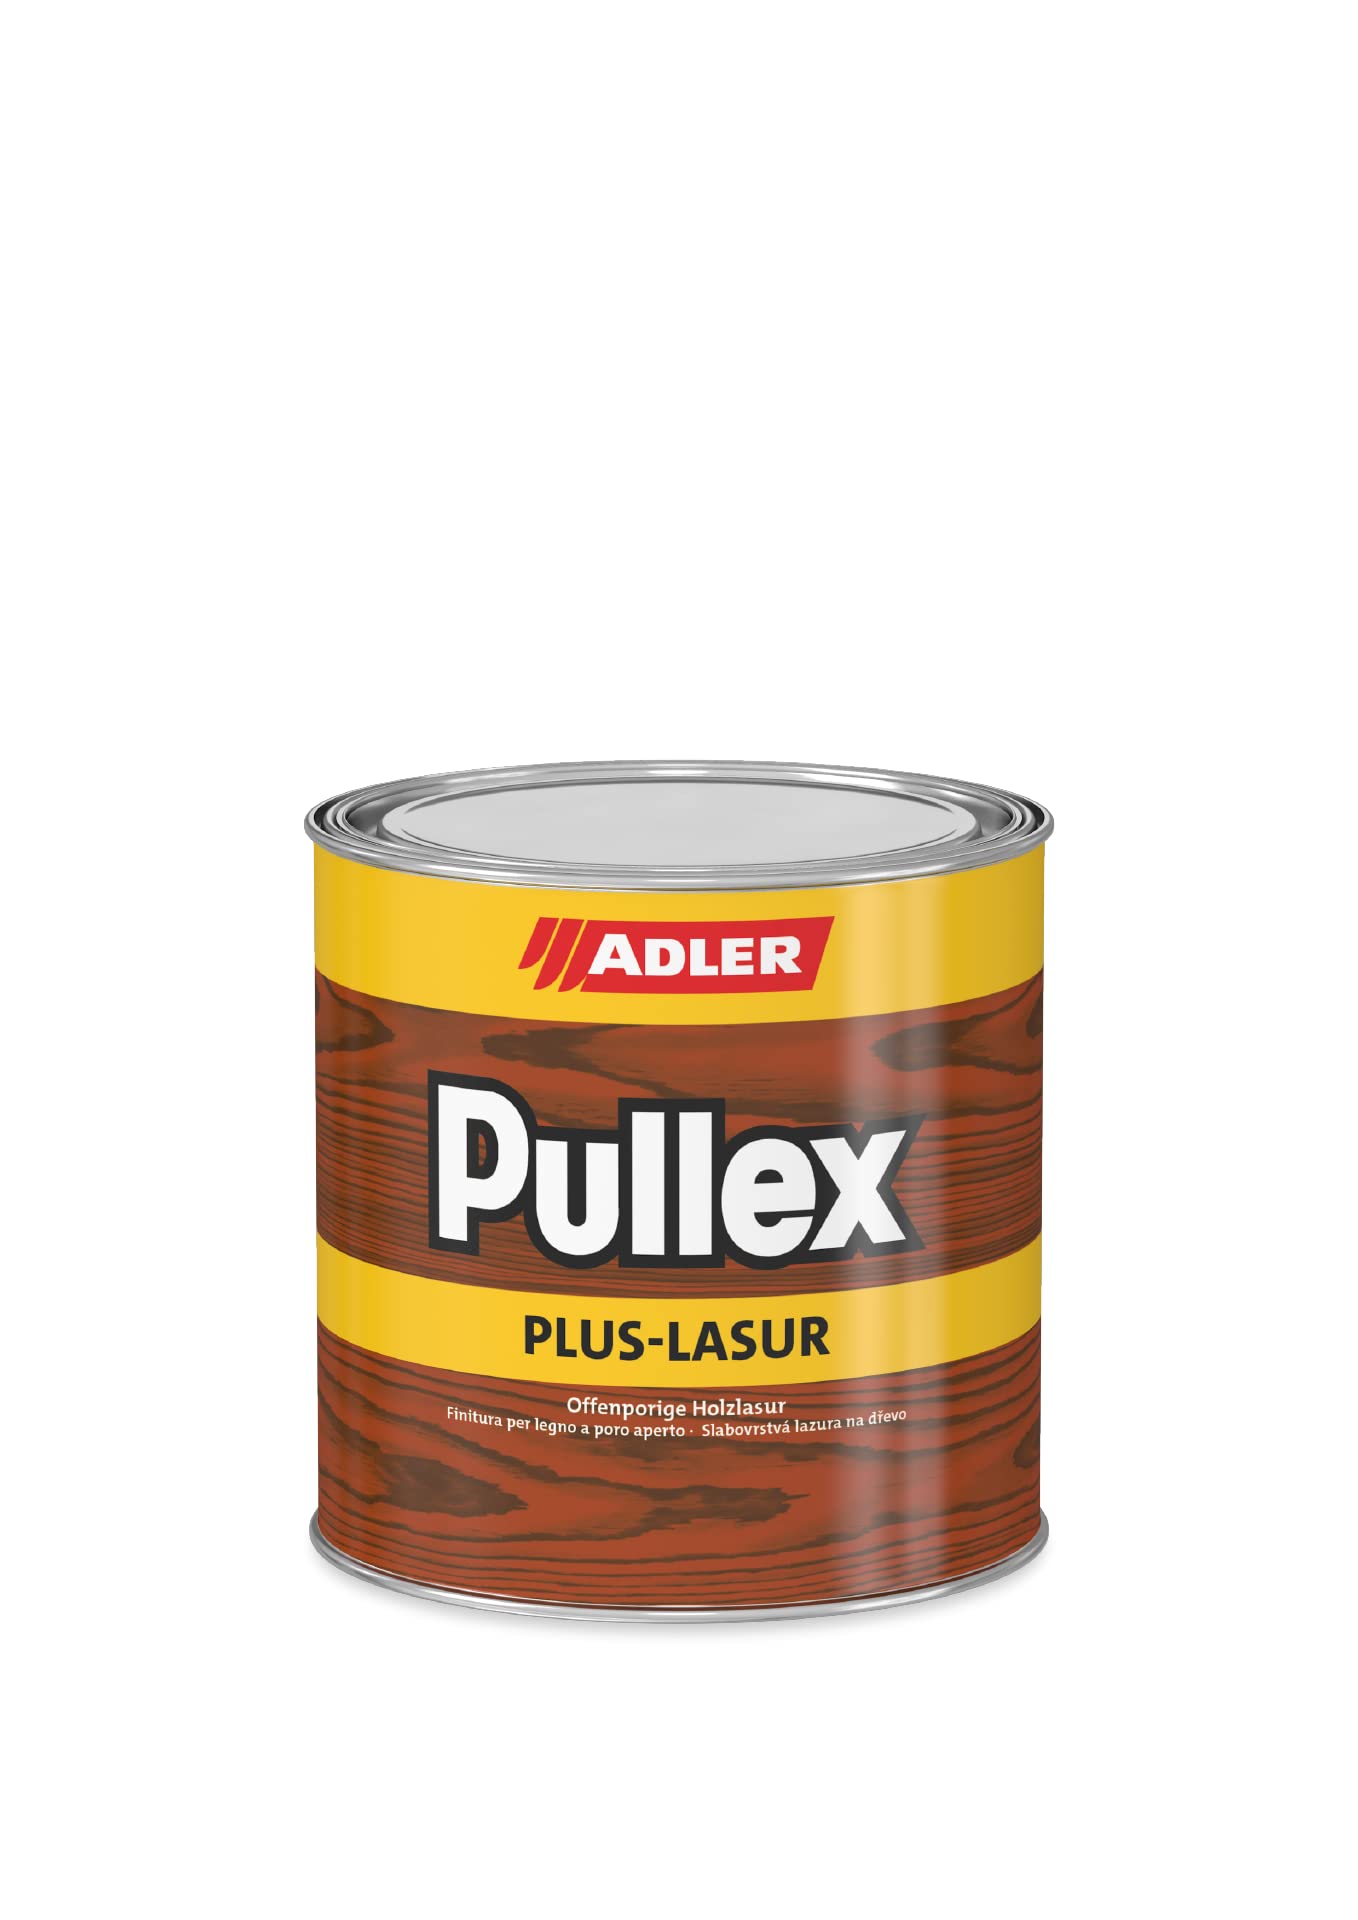 ADLER Pullex Plus-Lasur - Holzlasur Außen Farblos - Universell einsetzbare & aromatenfreie Holzschutzlasur als perfekter UV- & Wetterschutz - 750 ml Kastanie/Braun